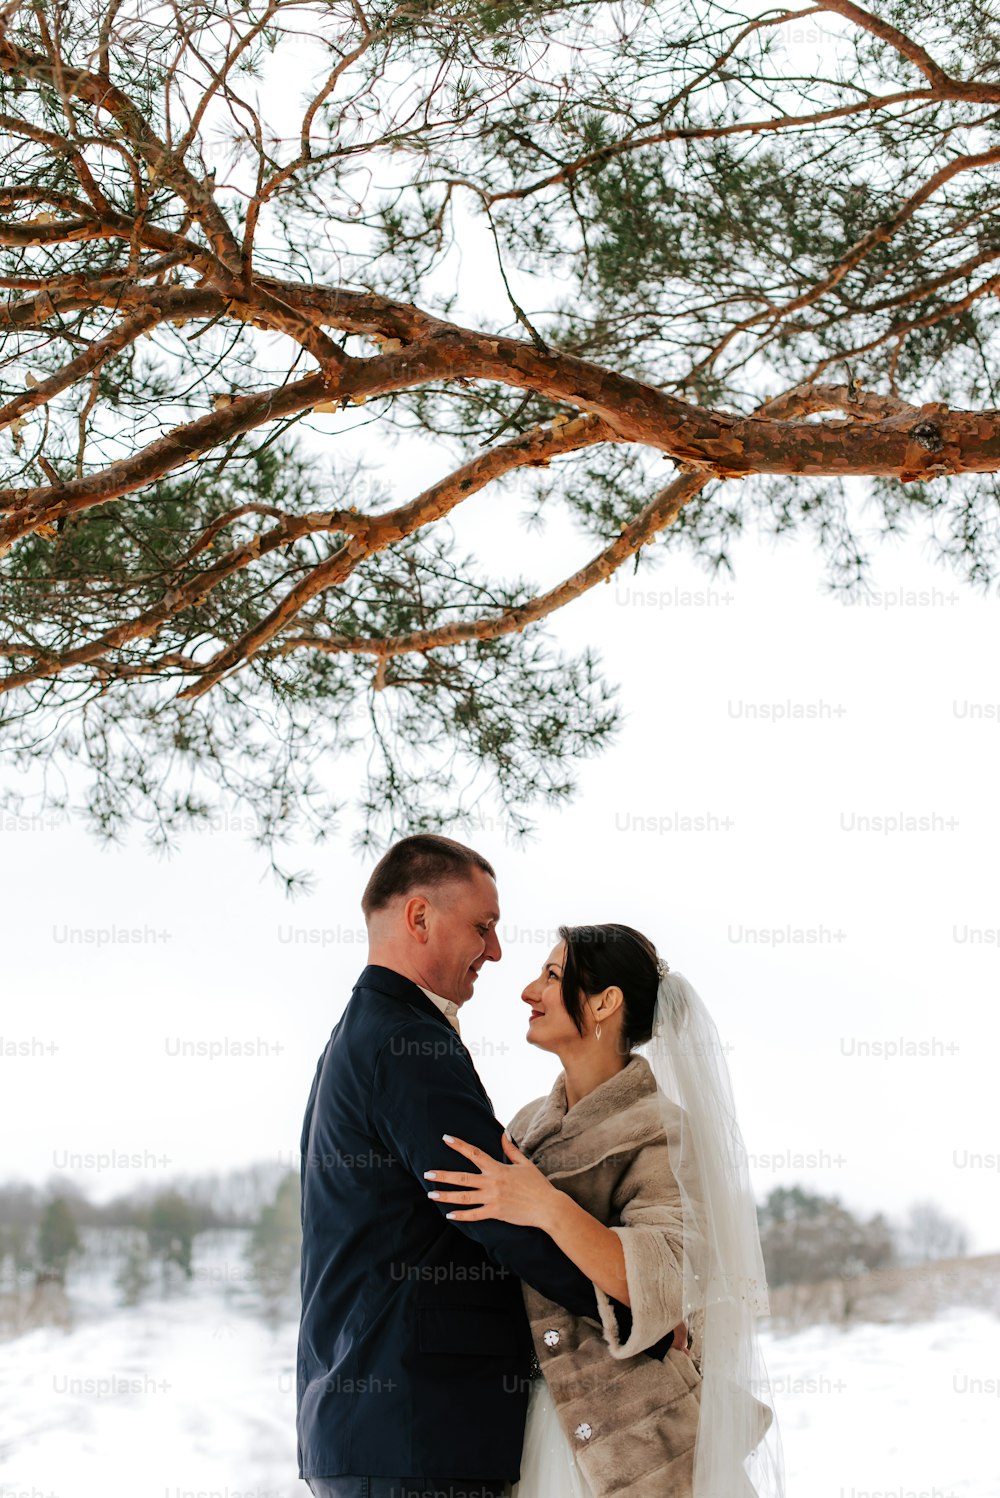 una sposa e uno sposo in piedi sotto un albero nella neve